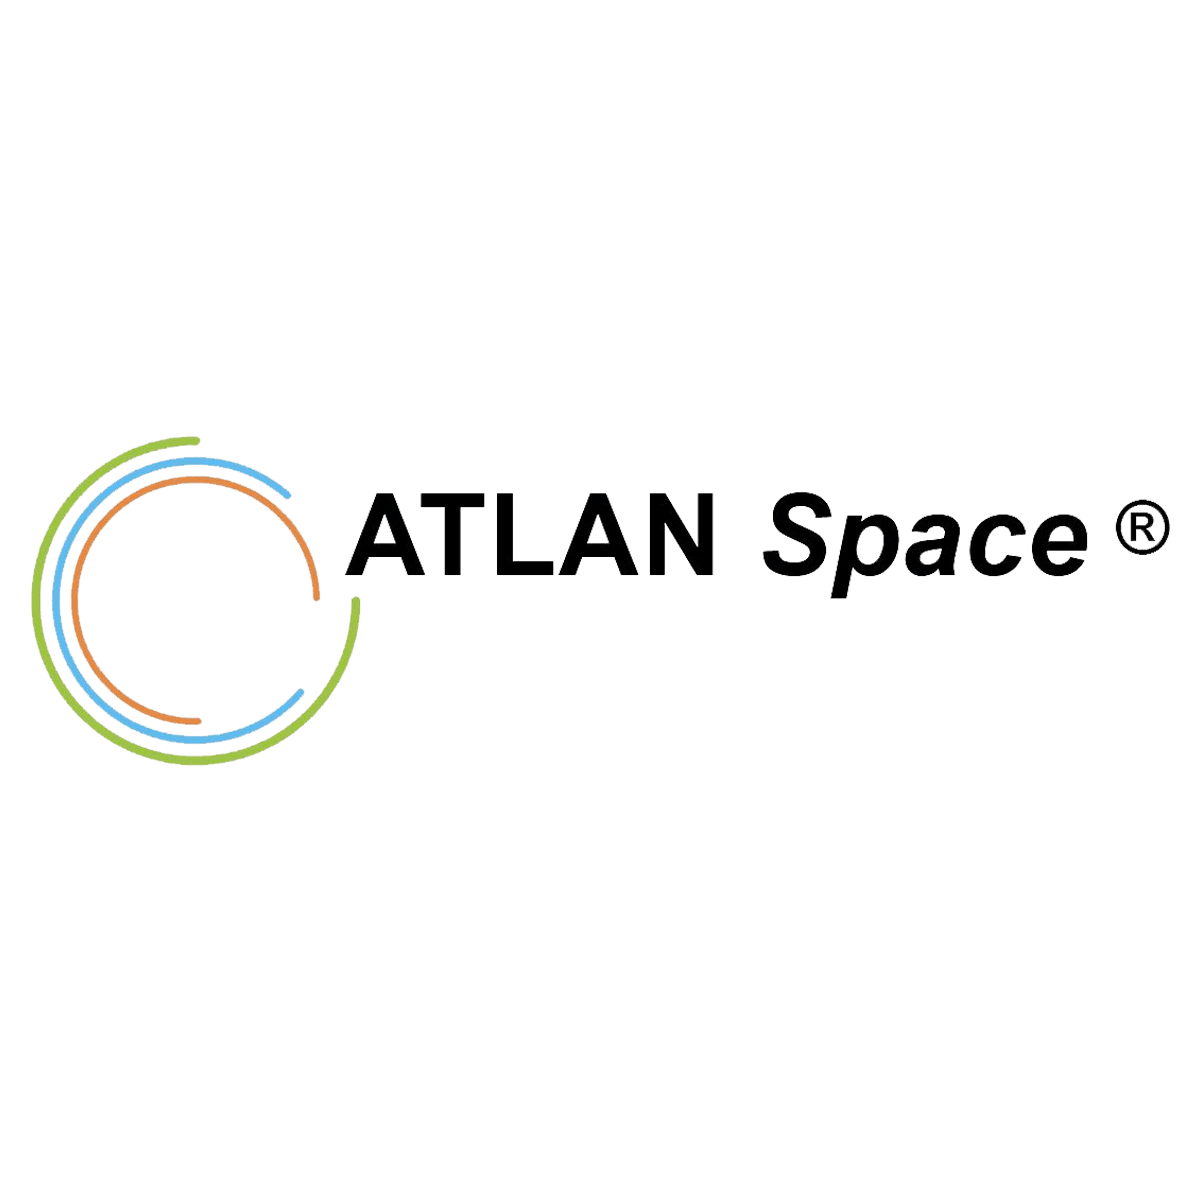 ATLAN SPACE